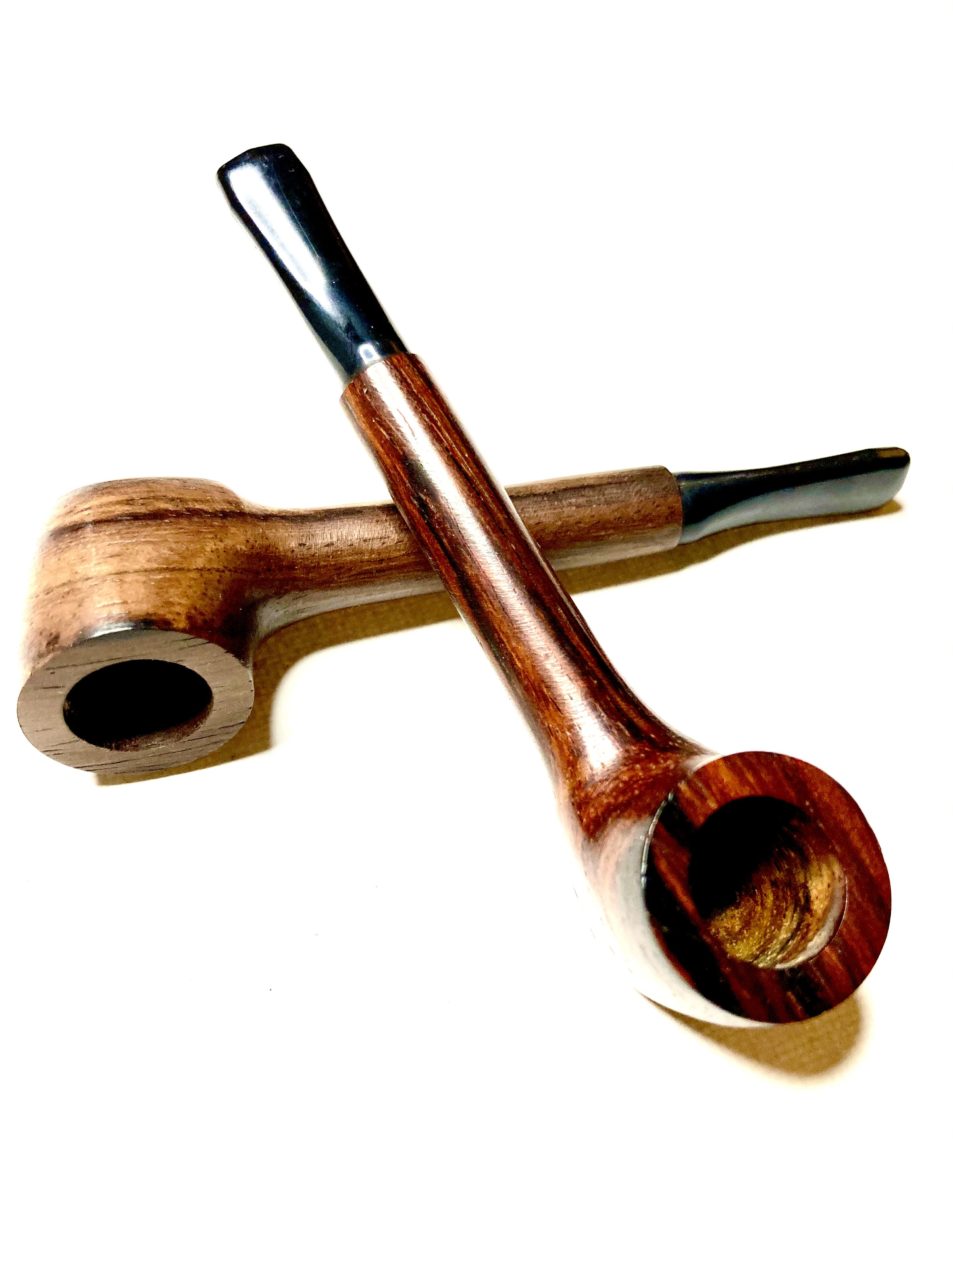 Wood carved smoking pipe Wooden Pipes Smoking pipe Breeze Wooden Pipes Tobacco pipes Tobacco Bowl Tobacco smoking pipe